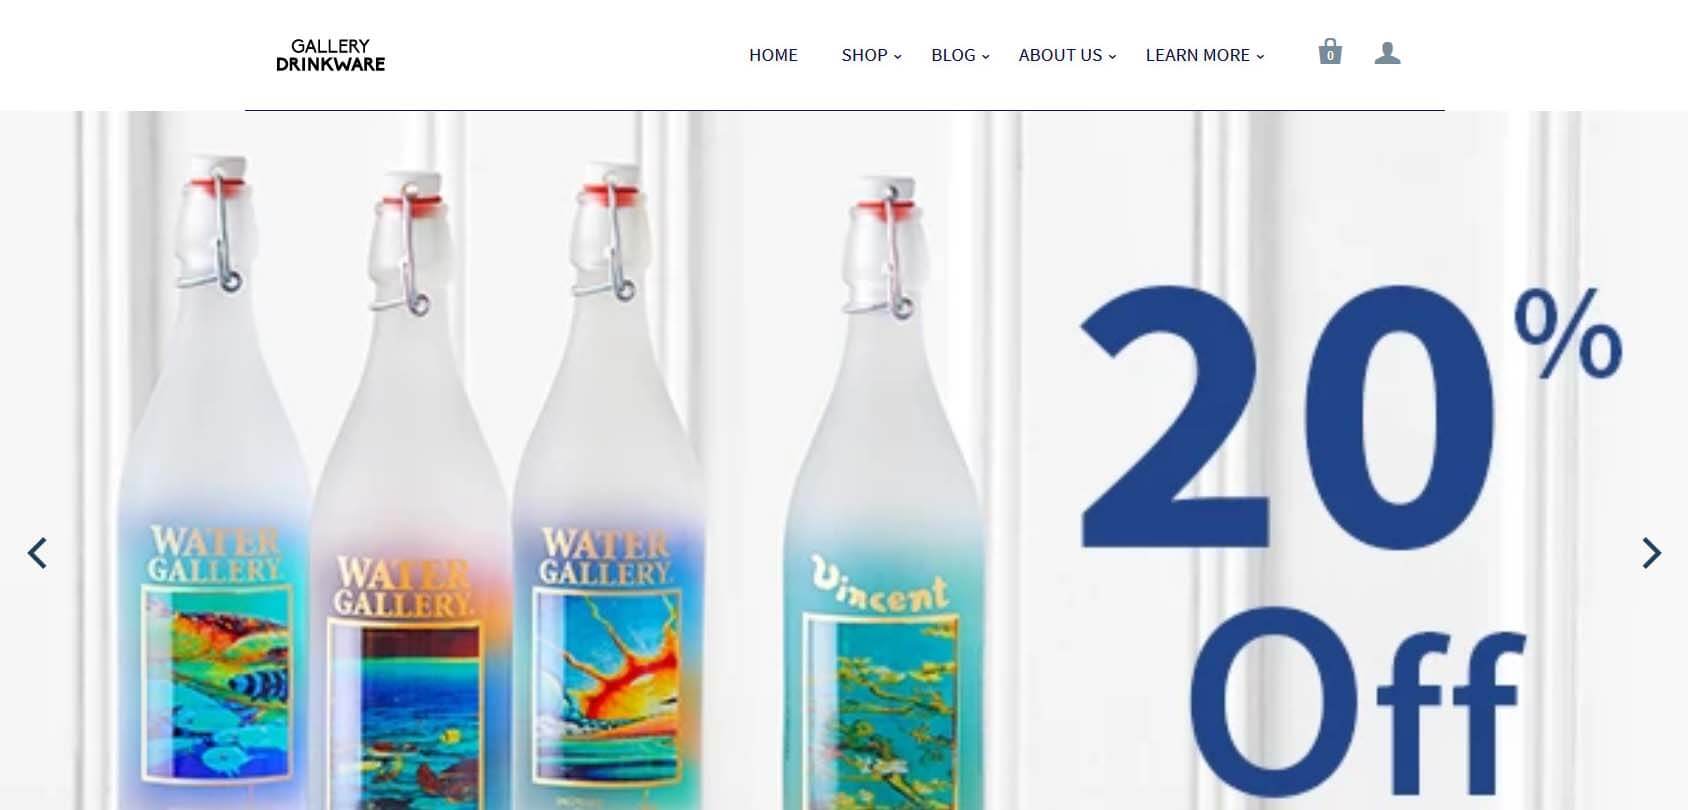 Gallery Drinkware homepage